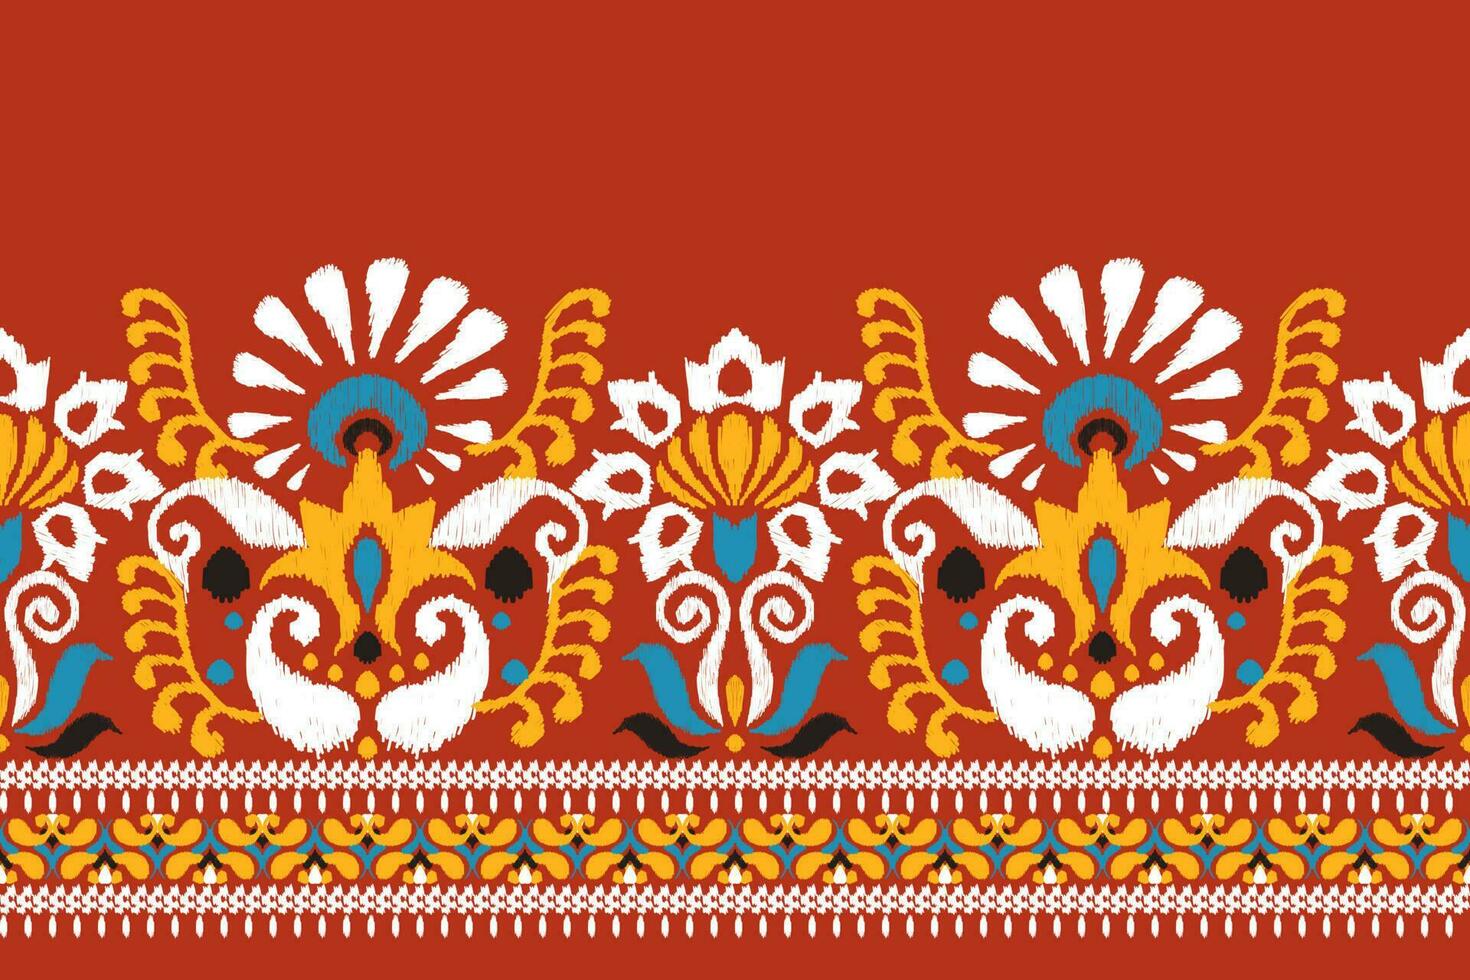 Indien ikat floral paisley broderie sur rouge background.ikat ethnique Oriental modèle traditionnel.aztèque style abstrait vecteur illustration.design pour texture, tissu, vêtements, emballage, décoration, paréo.